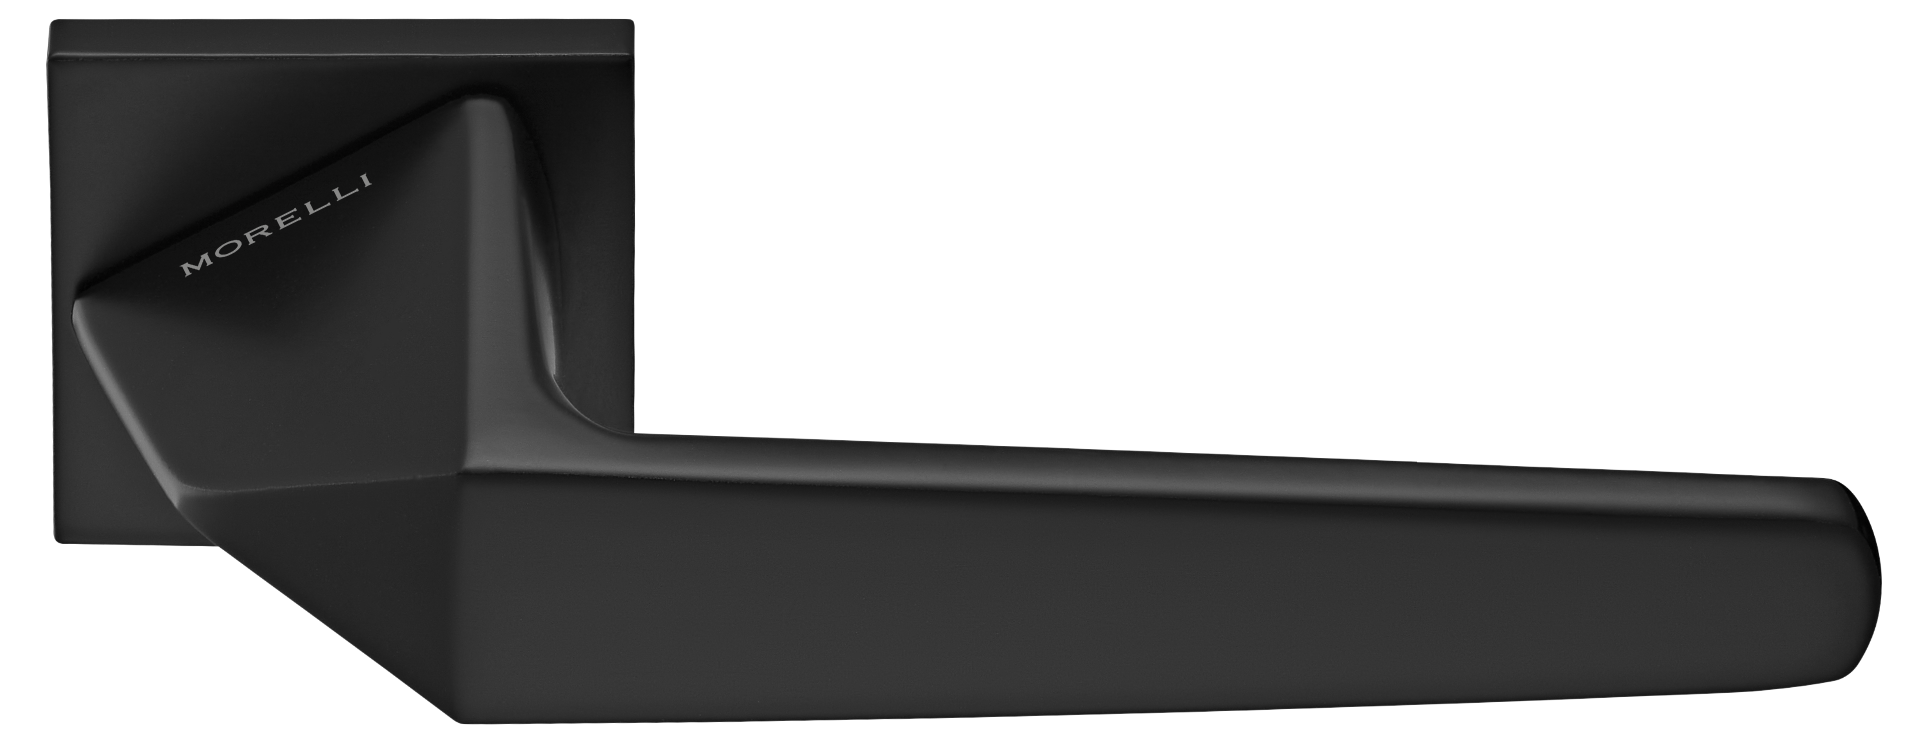 SOUK ручка дверная на квадратной розетке 6 мм, MH-55-S6 BL, цвет - черный фото купить Москва